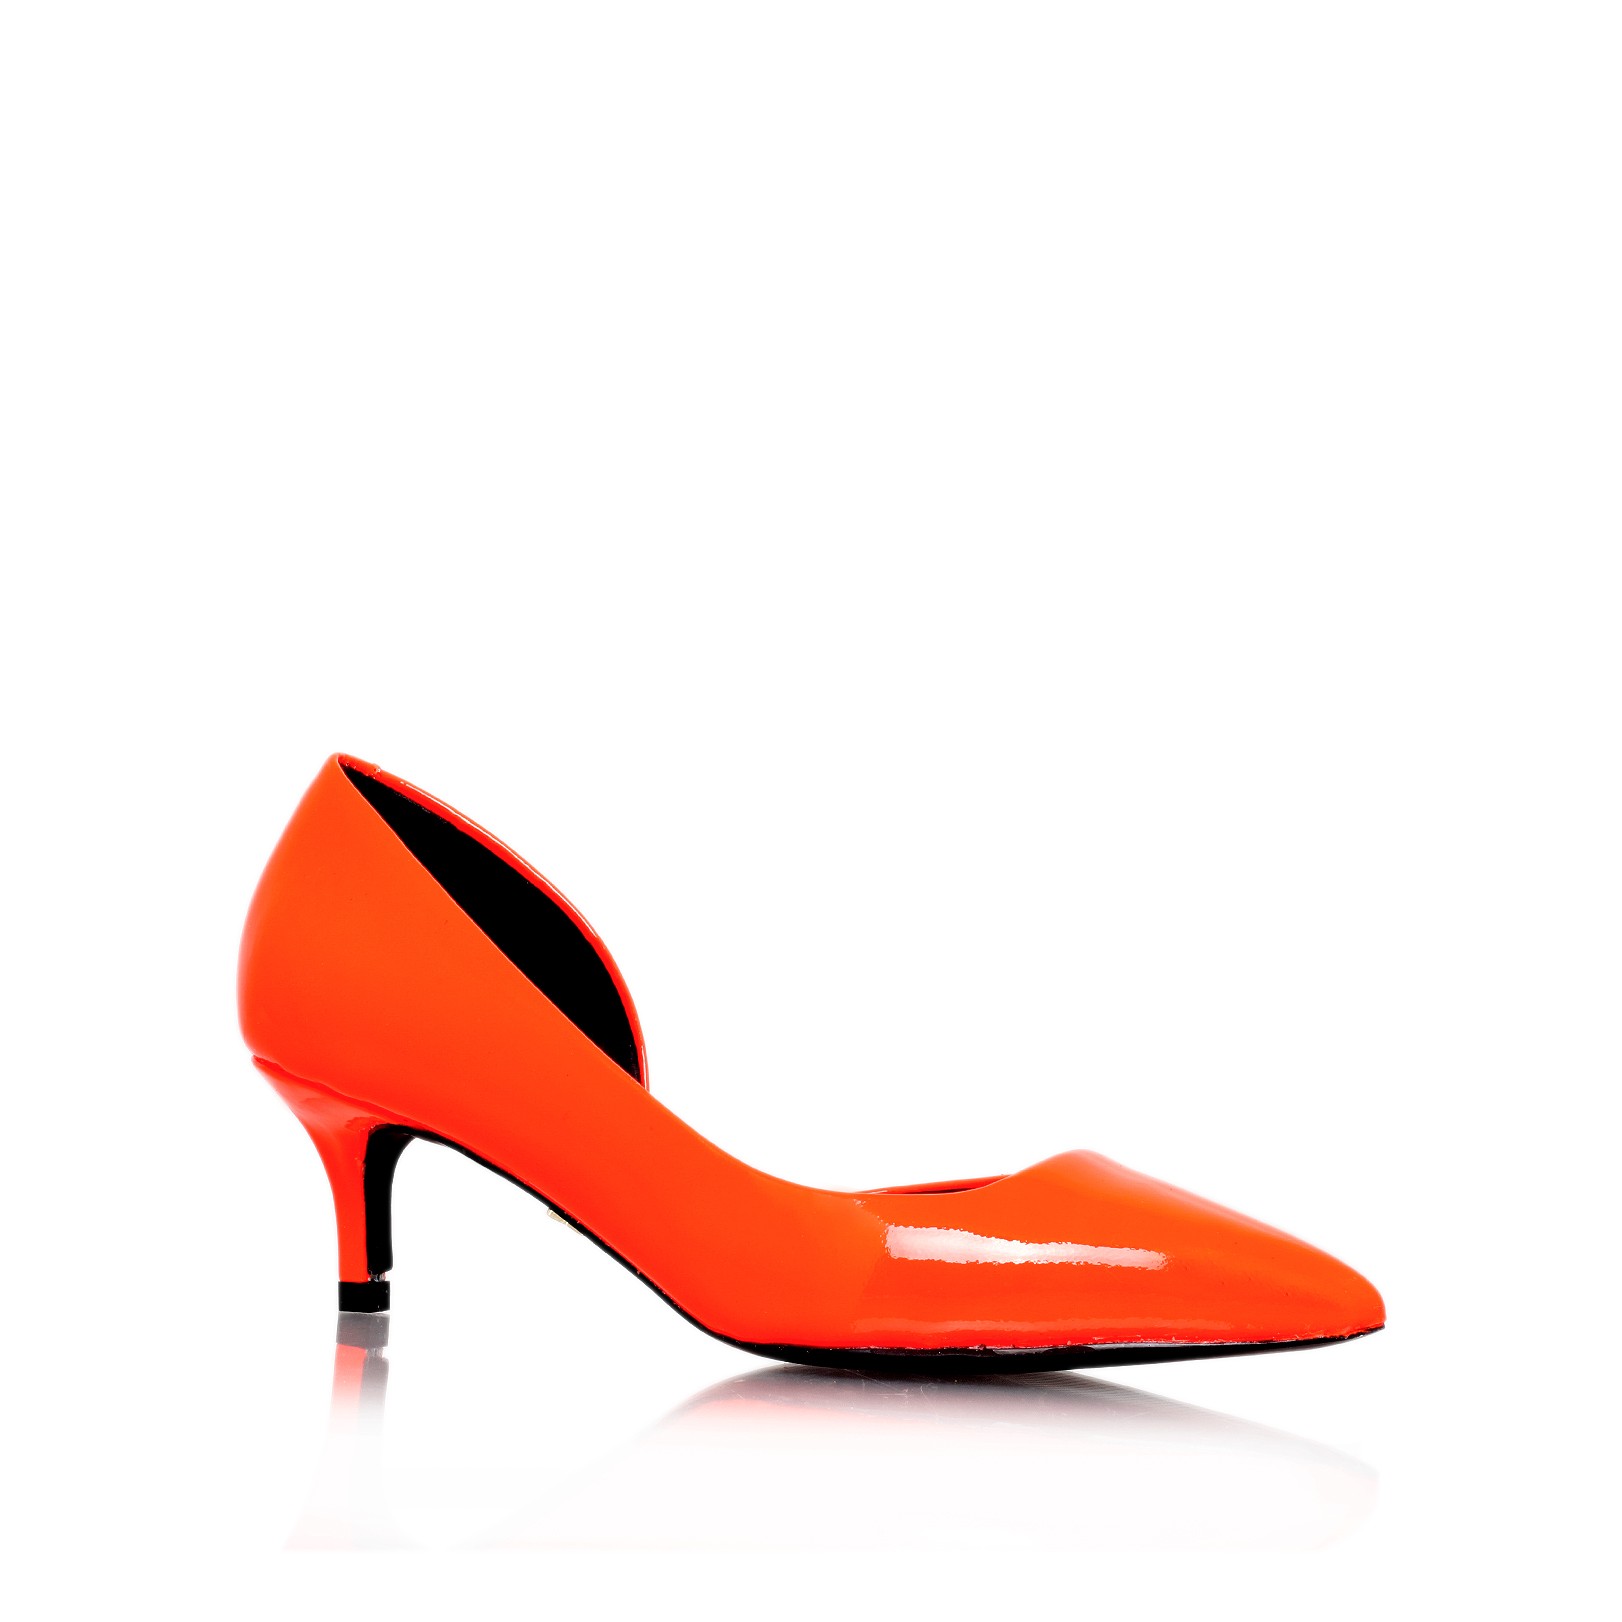 cara, orange shoe by kg kur...